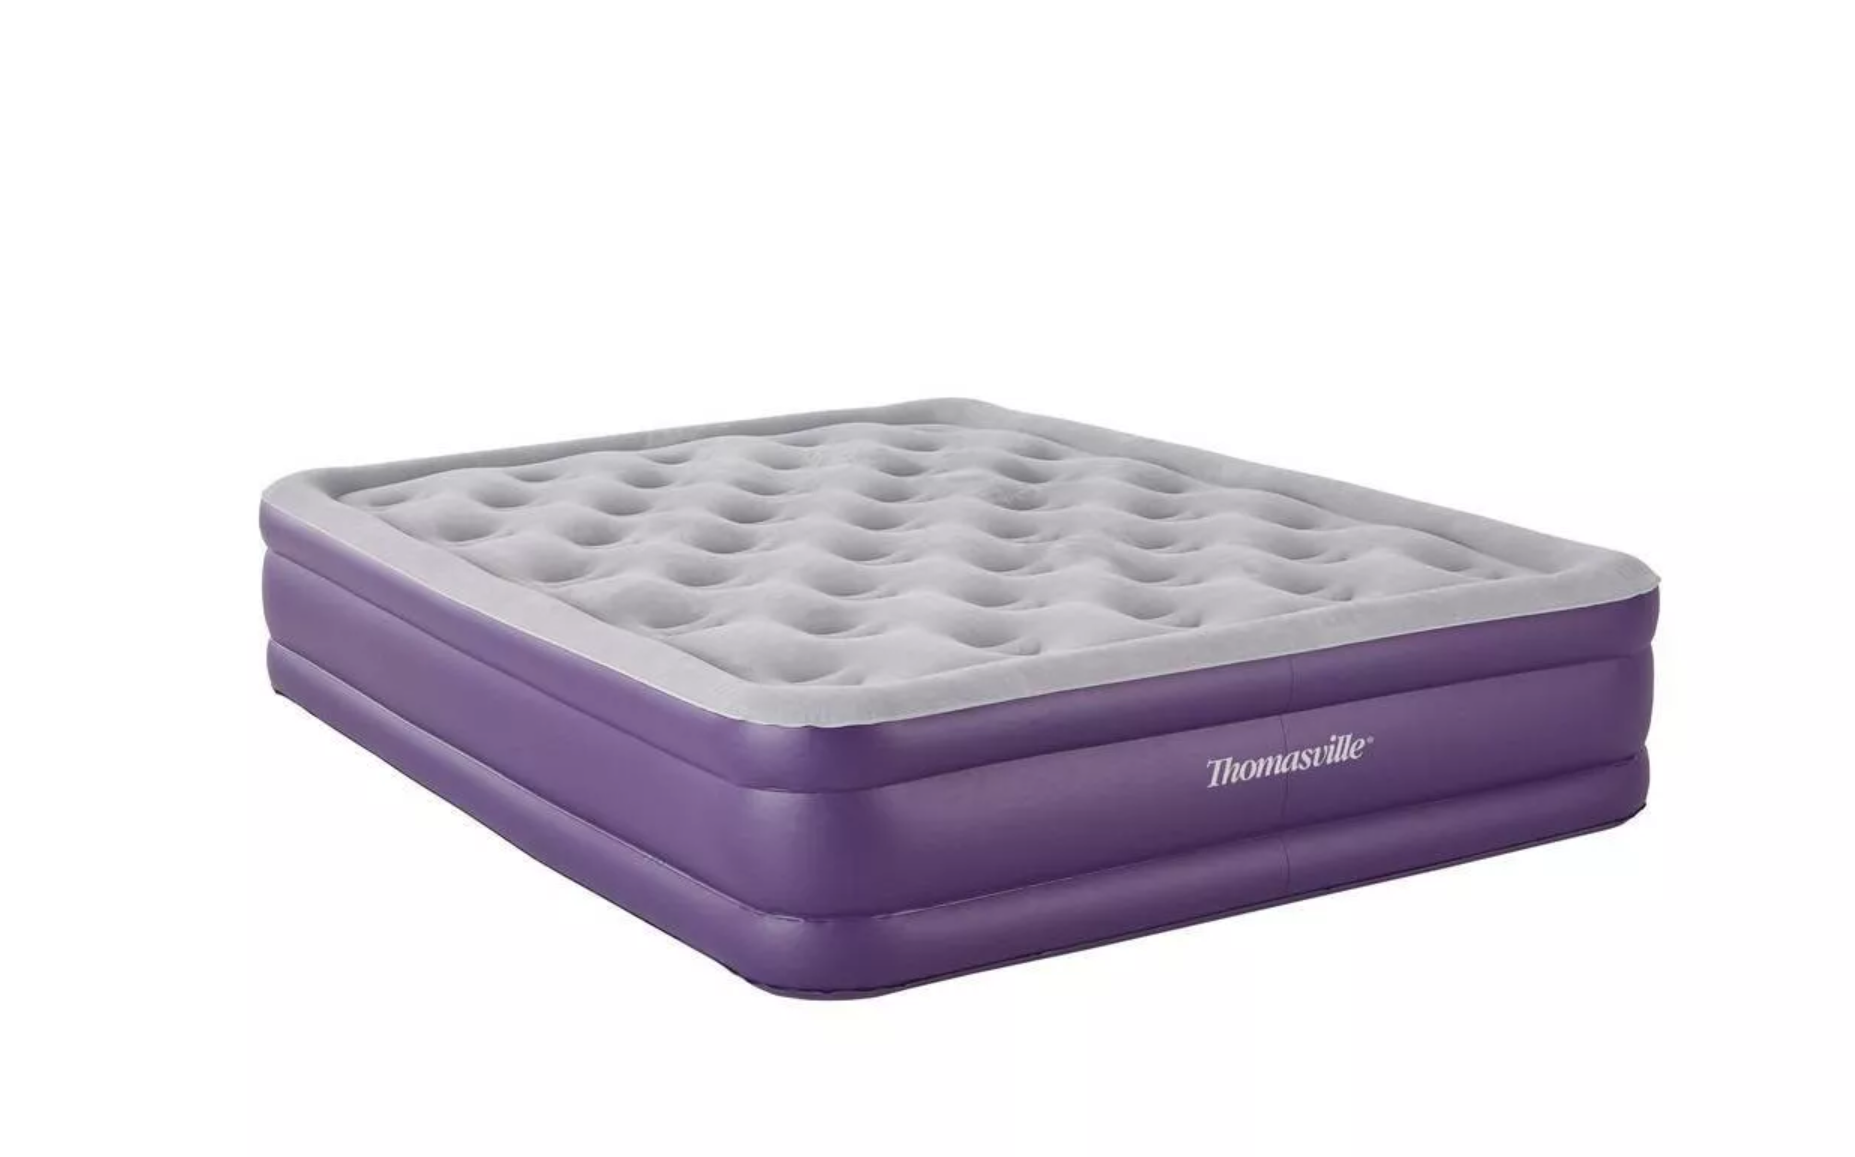 thomasville sensation air mattress